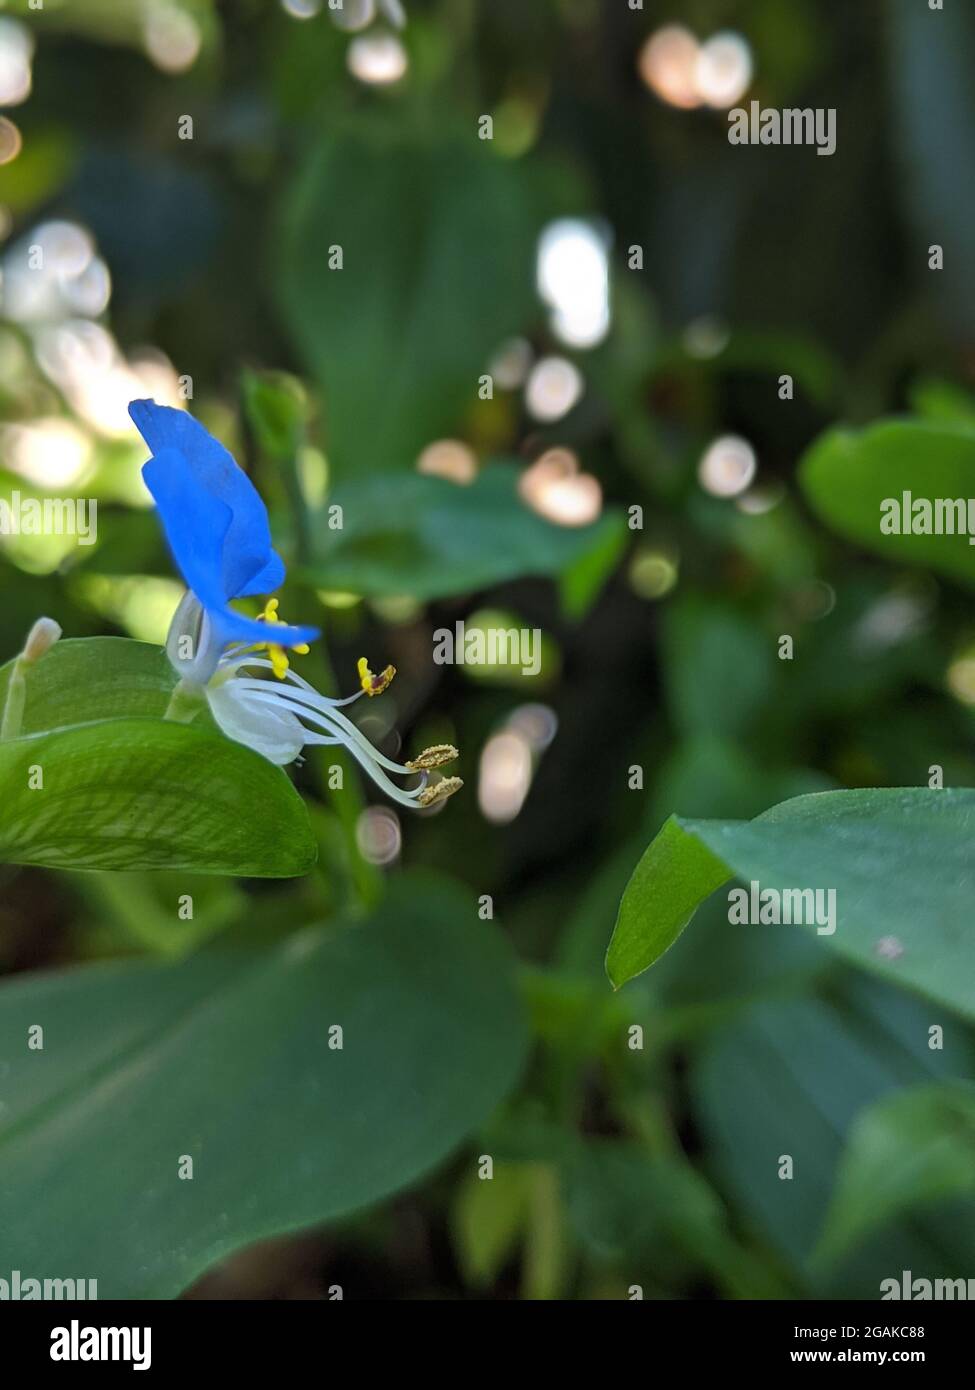 Asiatic dayflower flower among lush green leaves Stock Photo